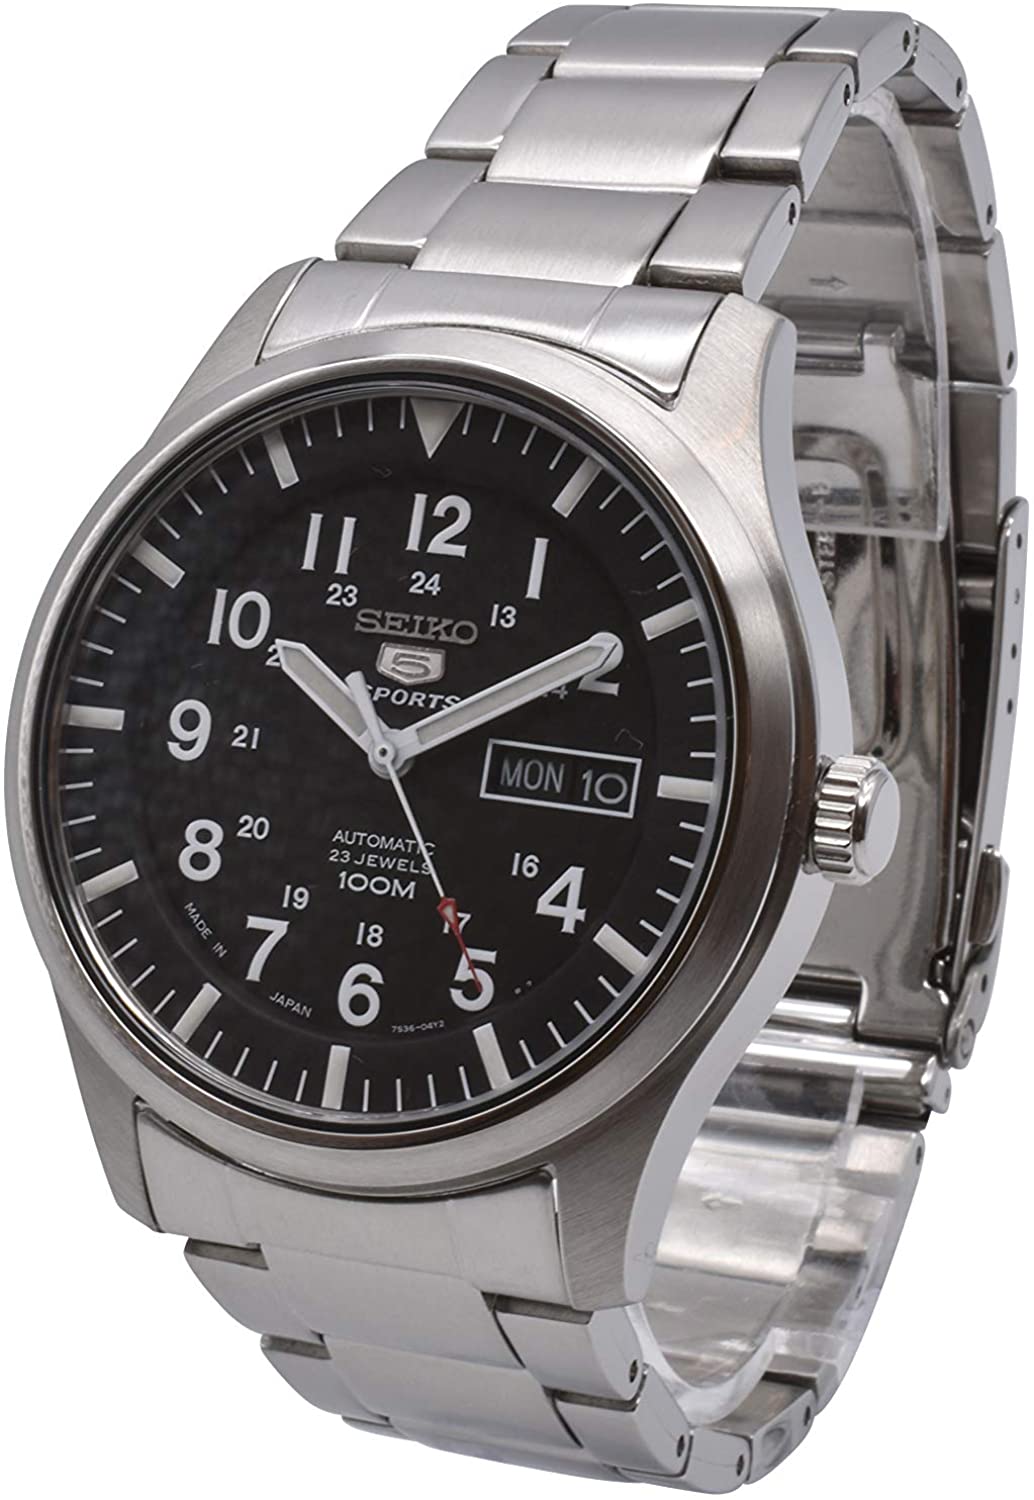 Đồng hồ Seiko cổ sẵn sàng (SEIKO SNZG13 Watch) Seiko SNZG13 Seiko 5  Automatic Black Dial Stainless-Steel Bracelet Watch [Hộp & Sách hướng dẫn  của Nhà sản xuất + Người bán bảo